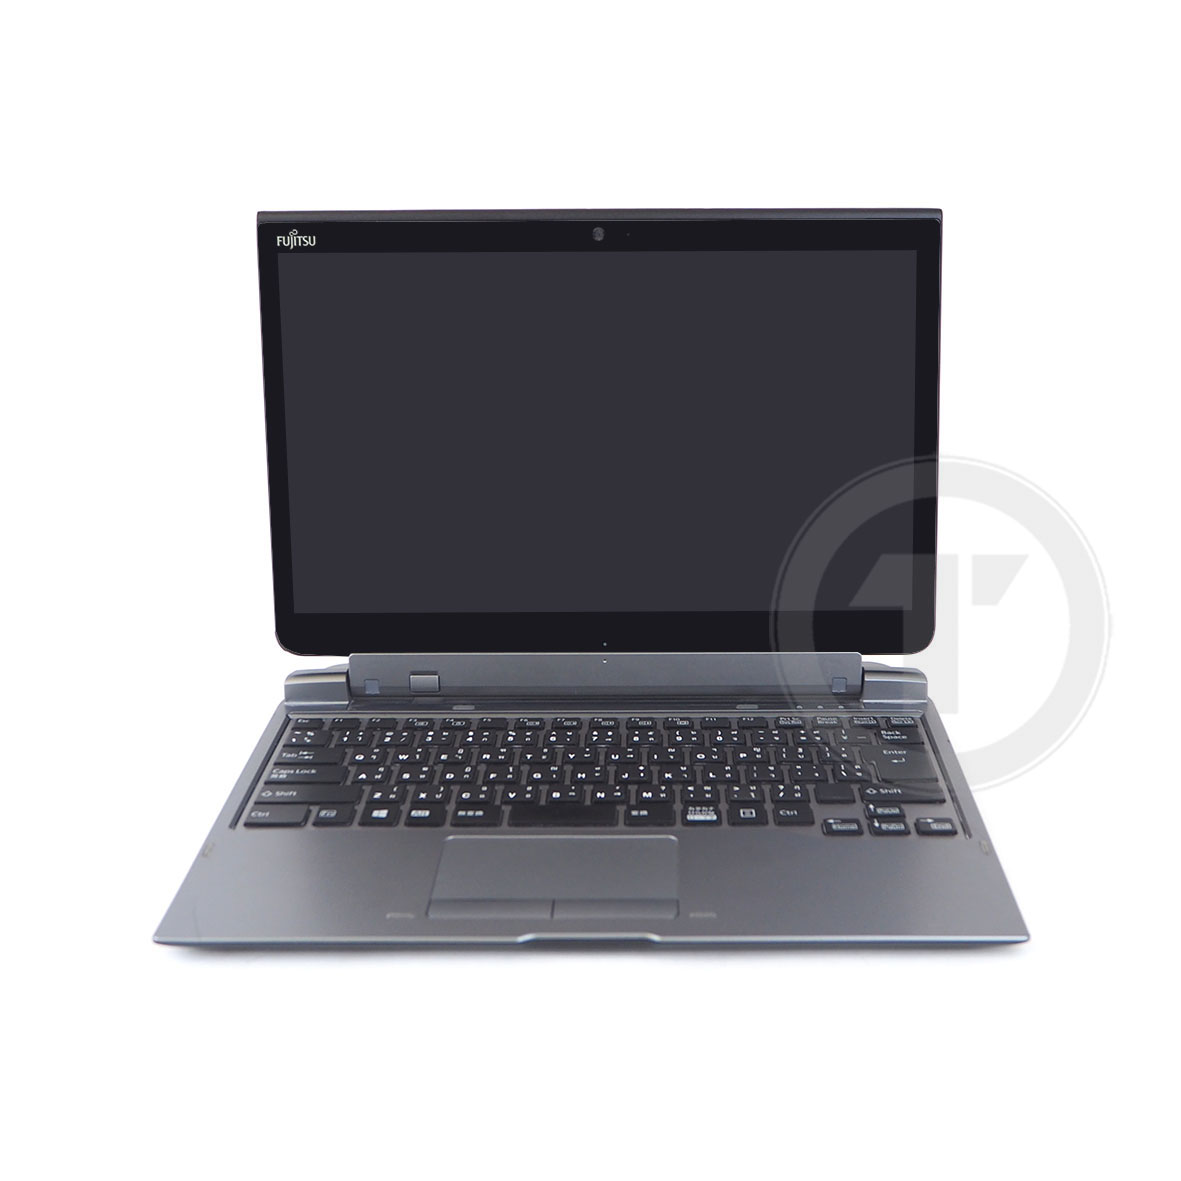 มุมมองเพิ่มเติมของสินค้า โน๊ตบุ๊ค/แท็บเล็ต 2 in 1 Fu Stylistic Q737/P Core i5-7300U RAM 4GB SSD 128GB /HDMI /WiFi /Blth /จอ 13.3” LED Full-HD ถอดจอได้ windows tablet Used laptop Refhed computer 2022 มีประกัน By Totalsol